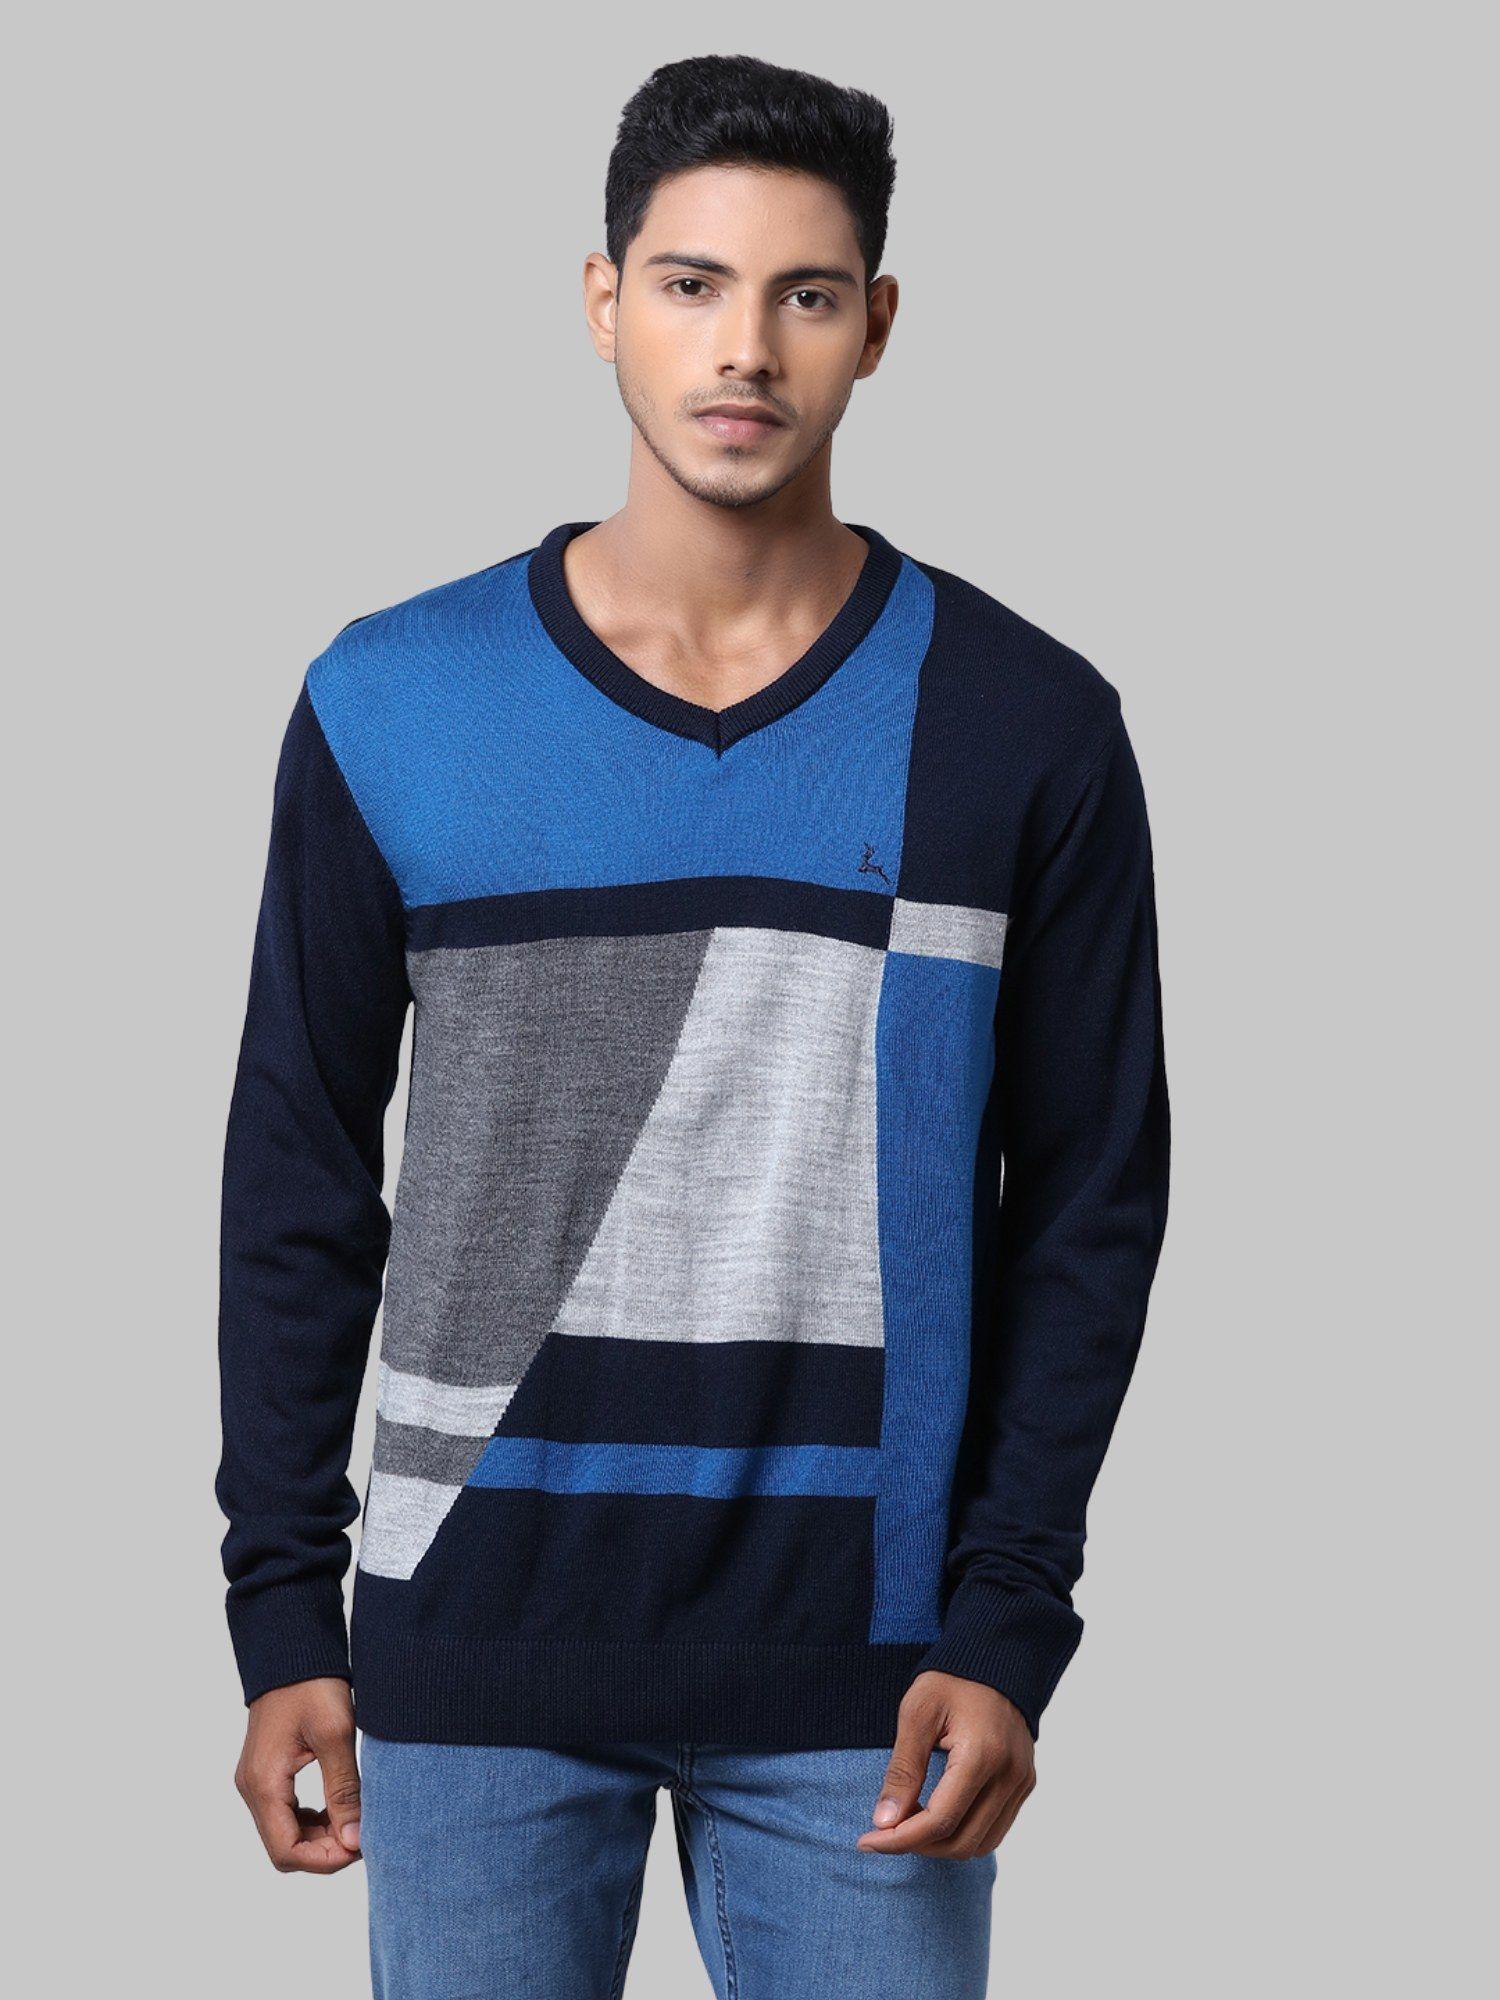 dark blue sweater